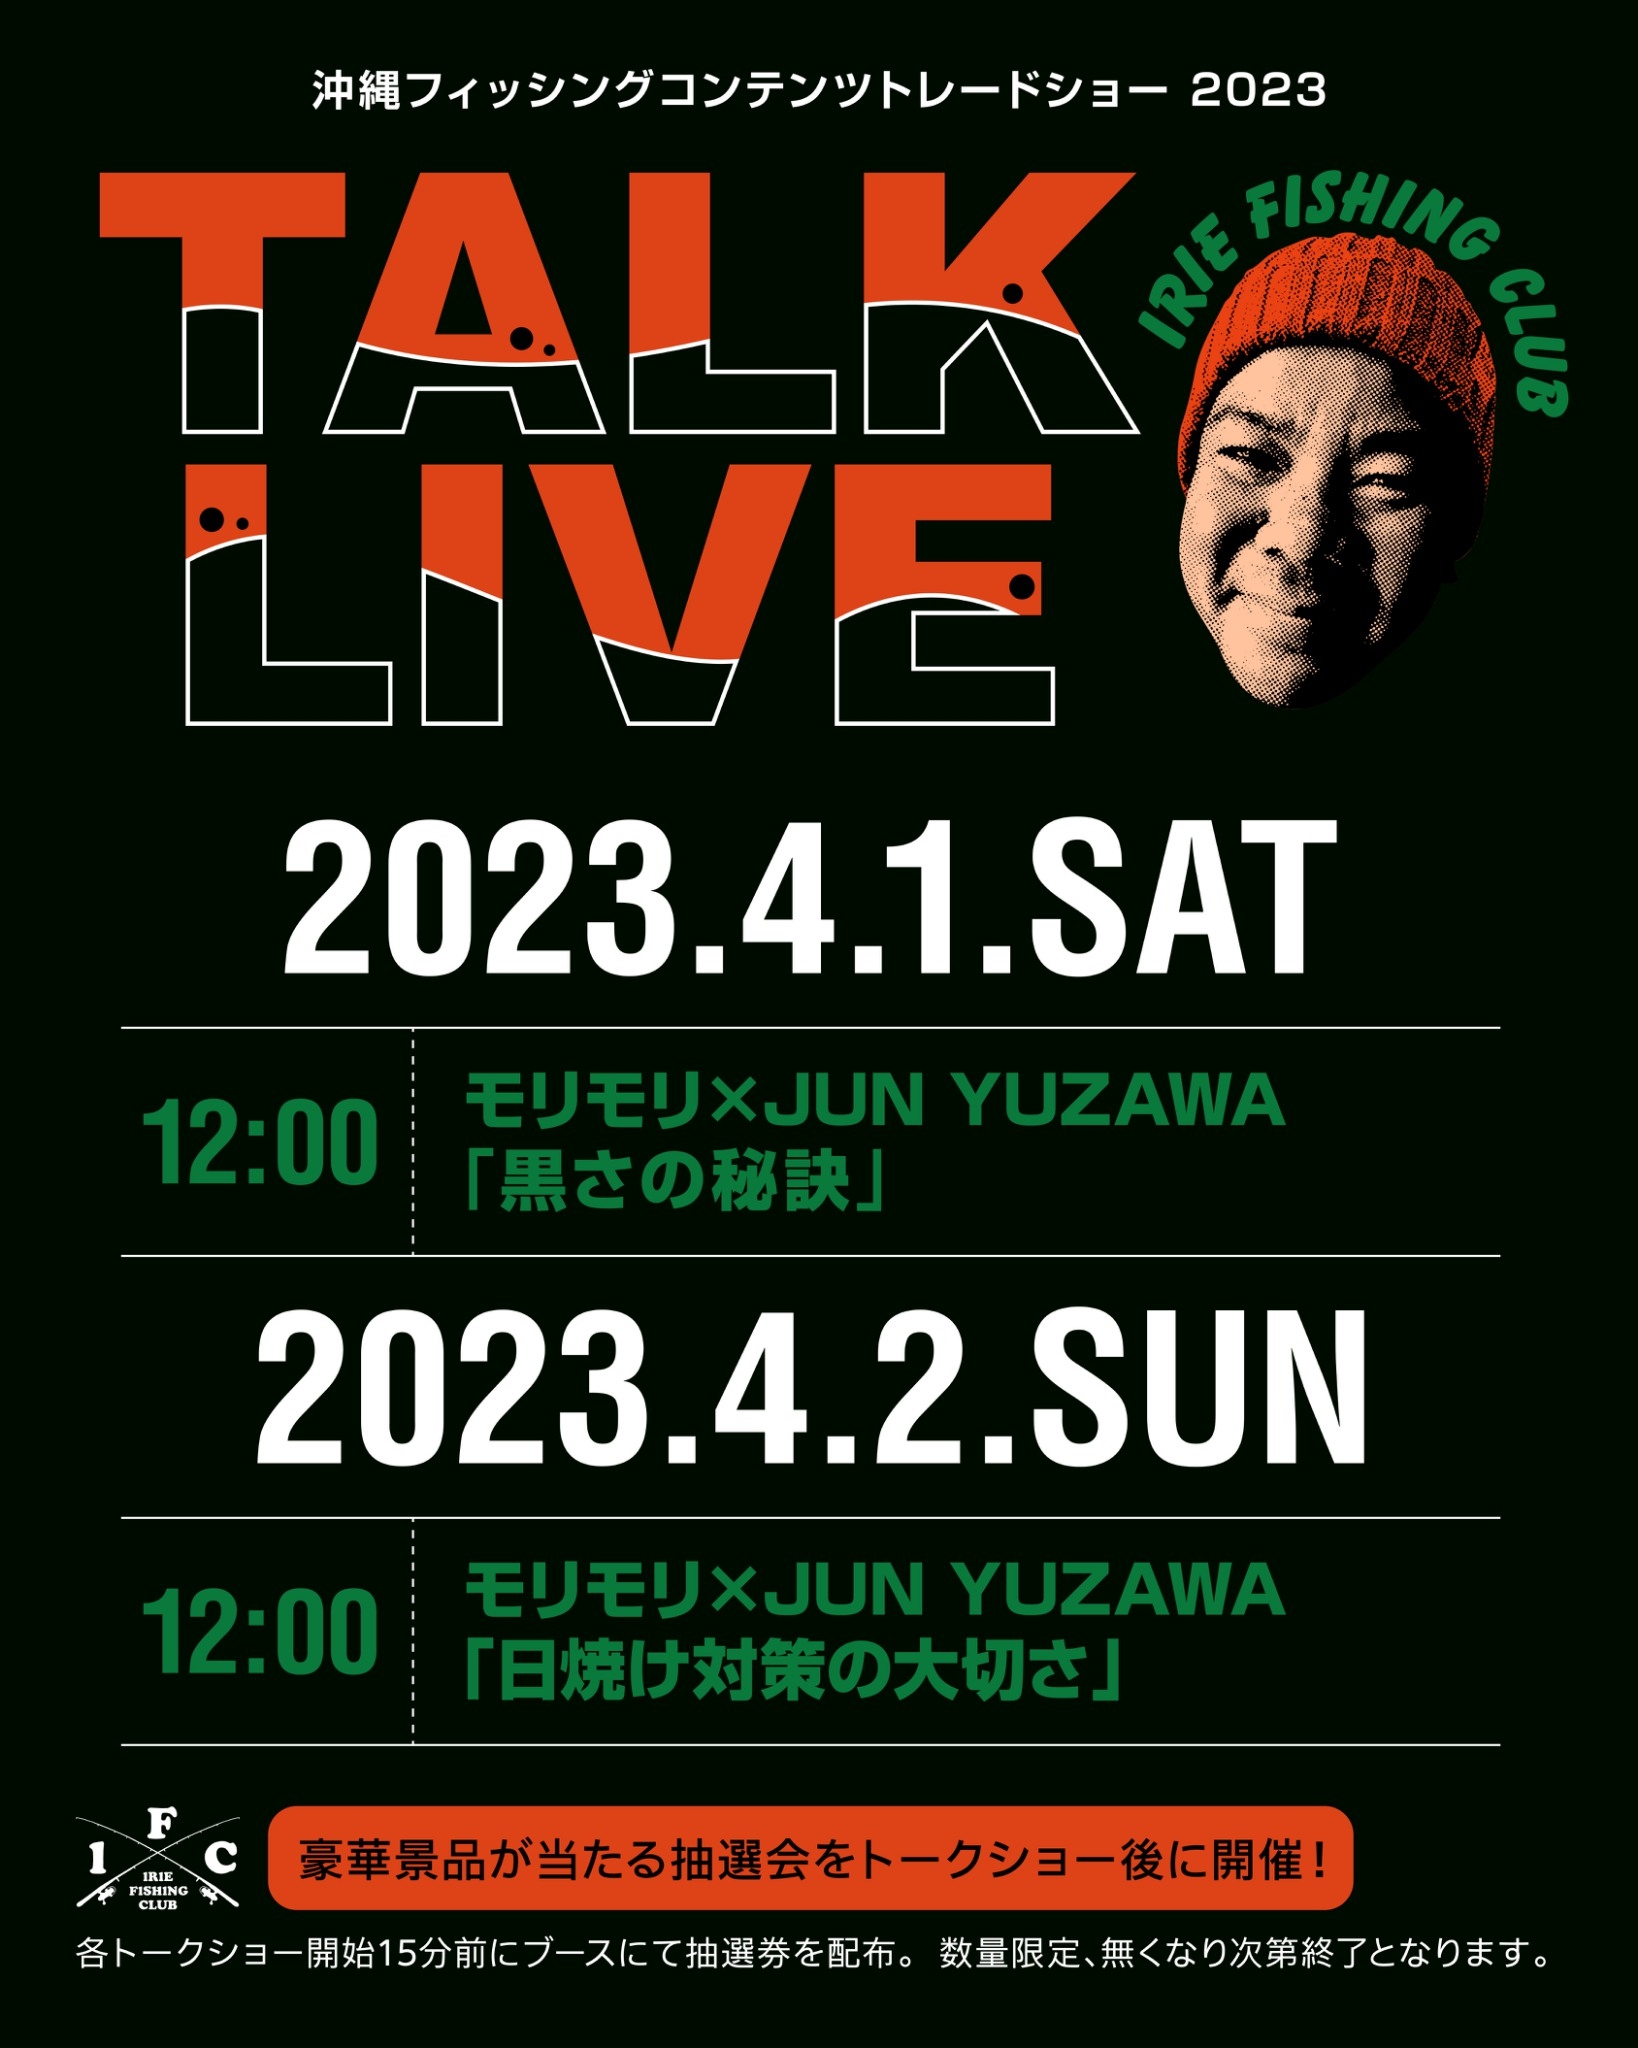 【 EVENT】沖縄フィッシングコンテンツトレードショー2023トークライブ